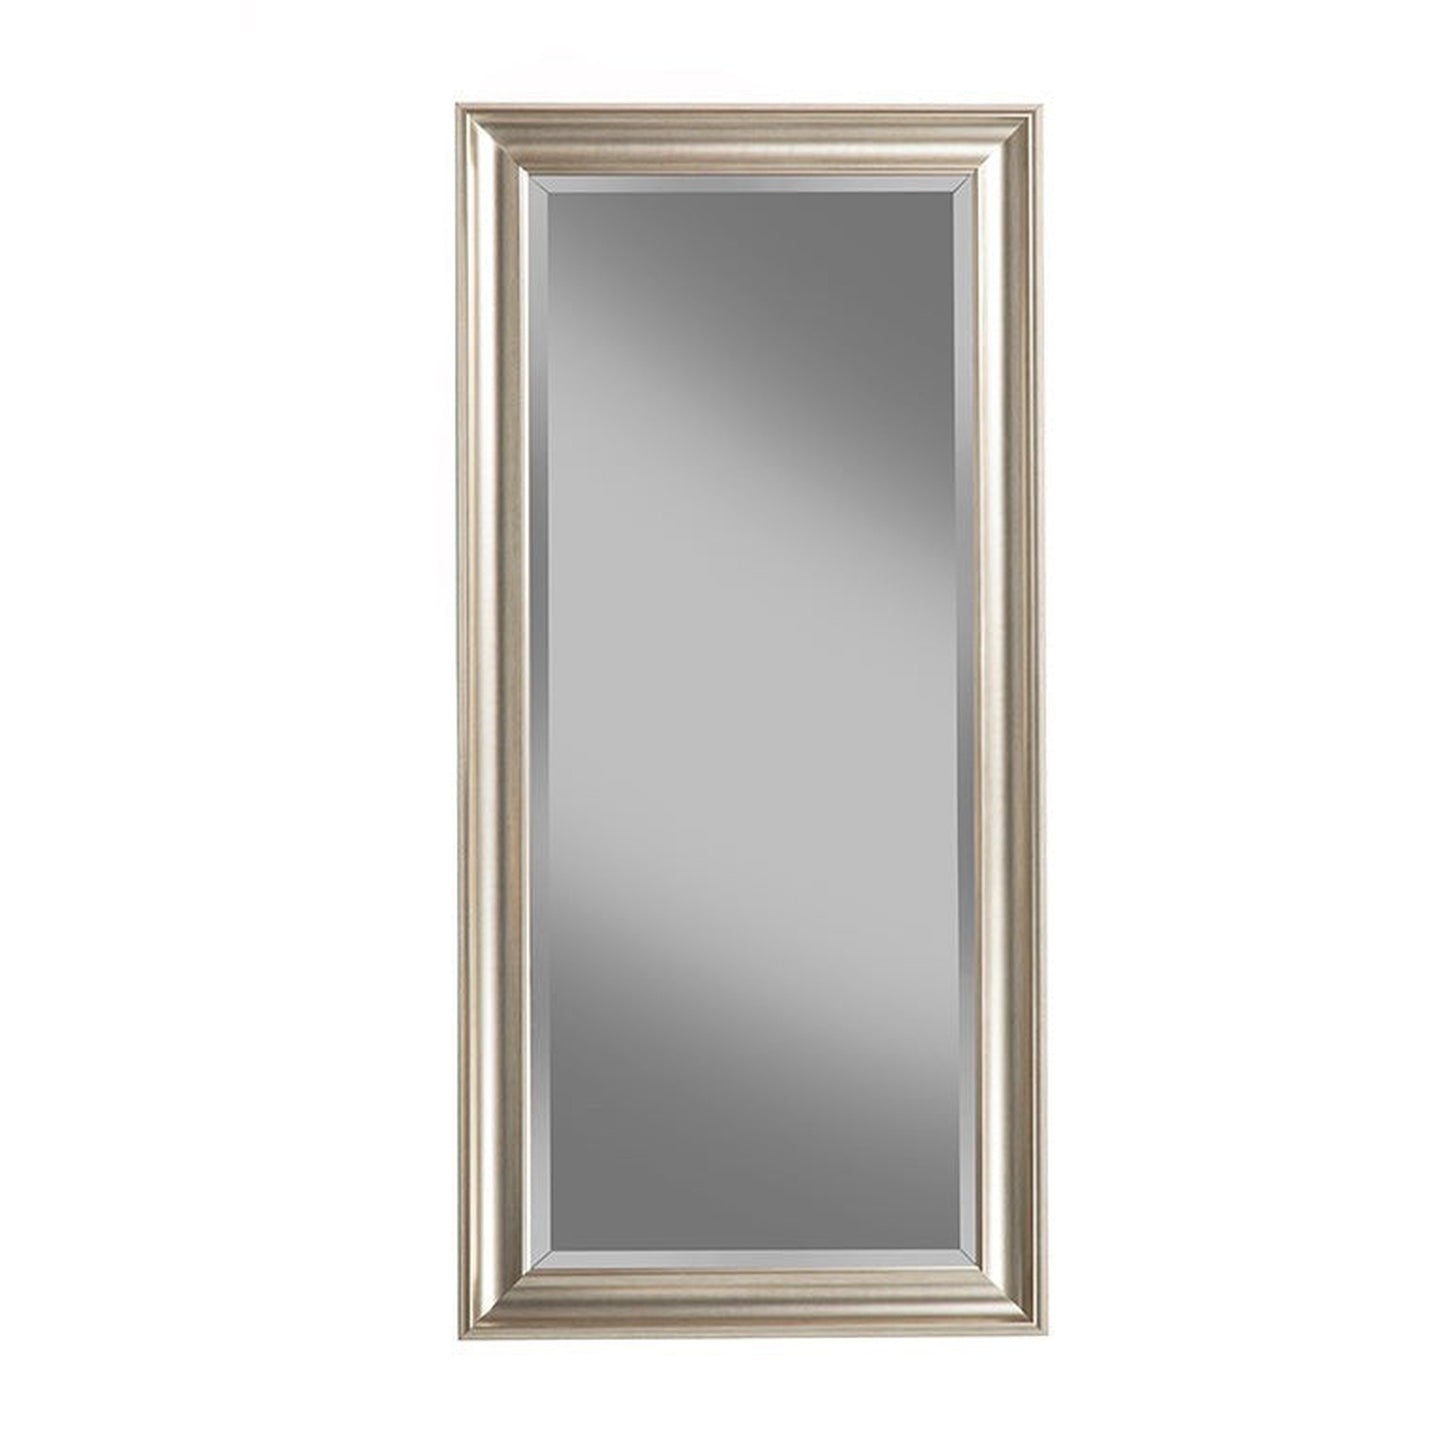 Benzara Champagne Silver Rectangular Polystyrene Frame Full Length Leaner Mirror